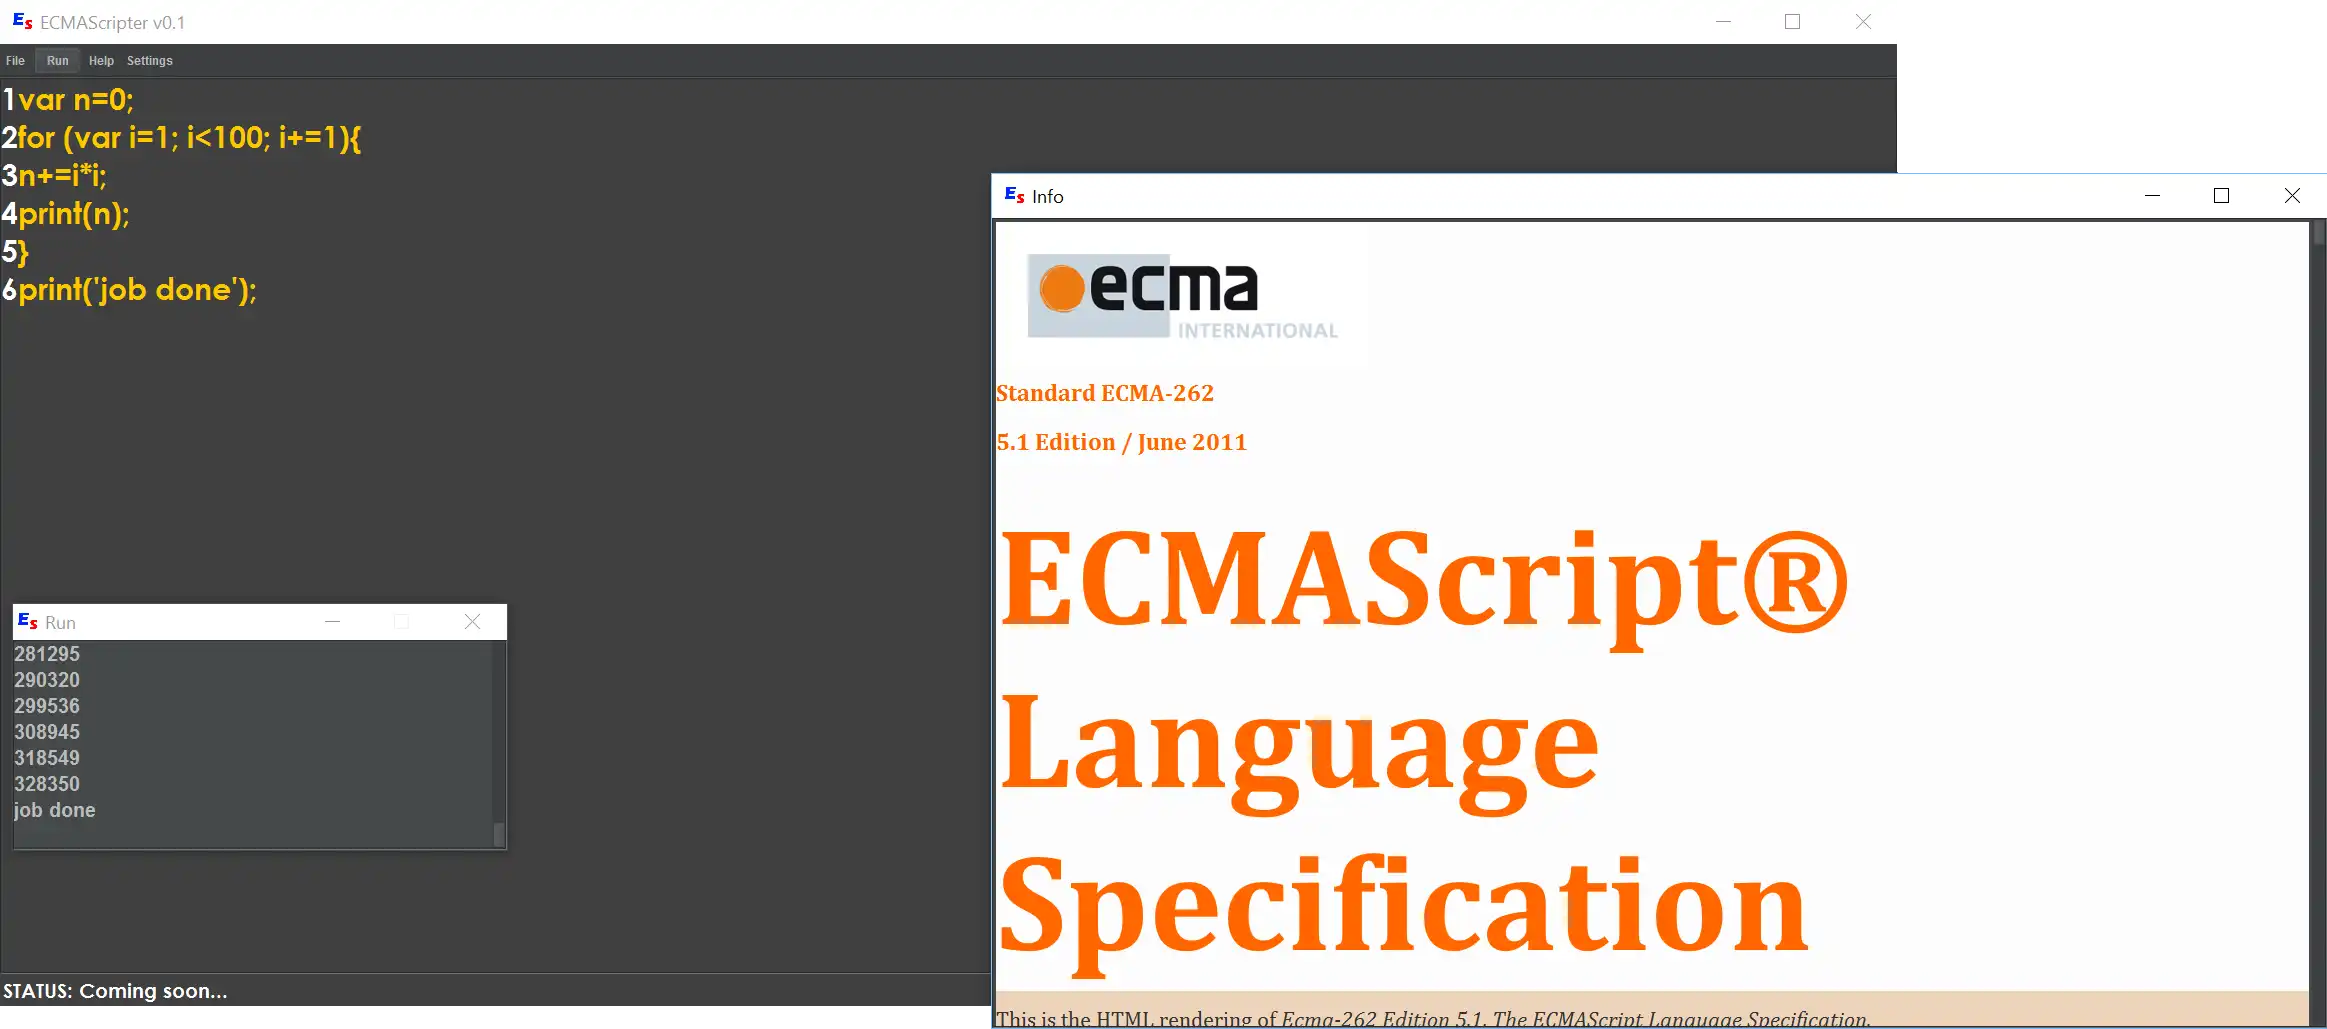 ابزار وب یا برنامه وب ECMAScripter را دانلود کنید